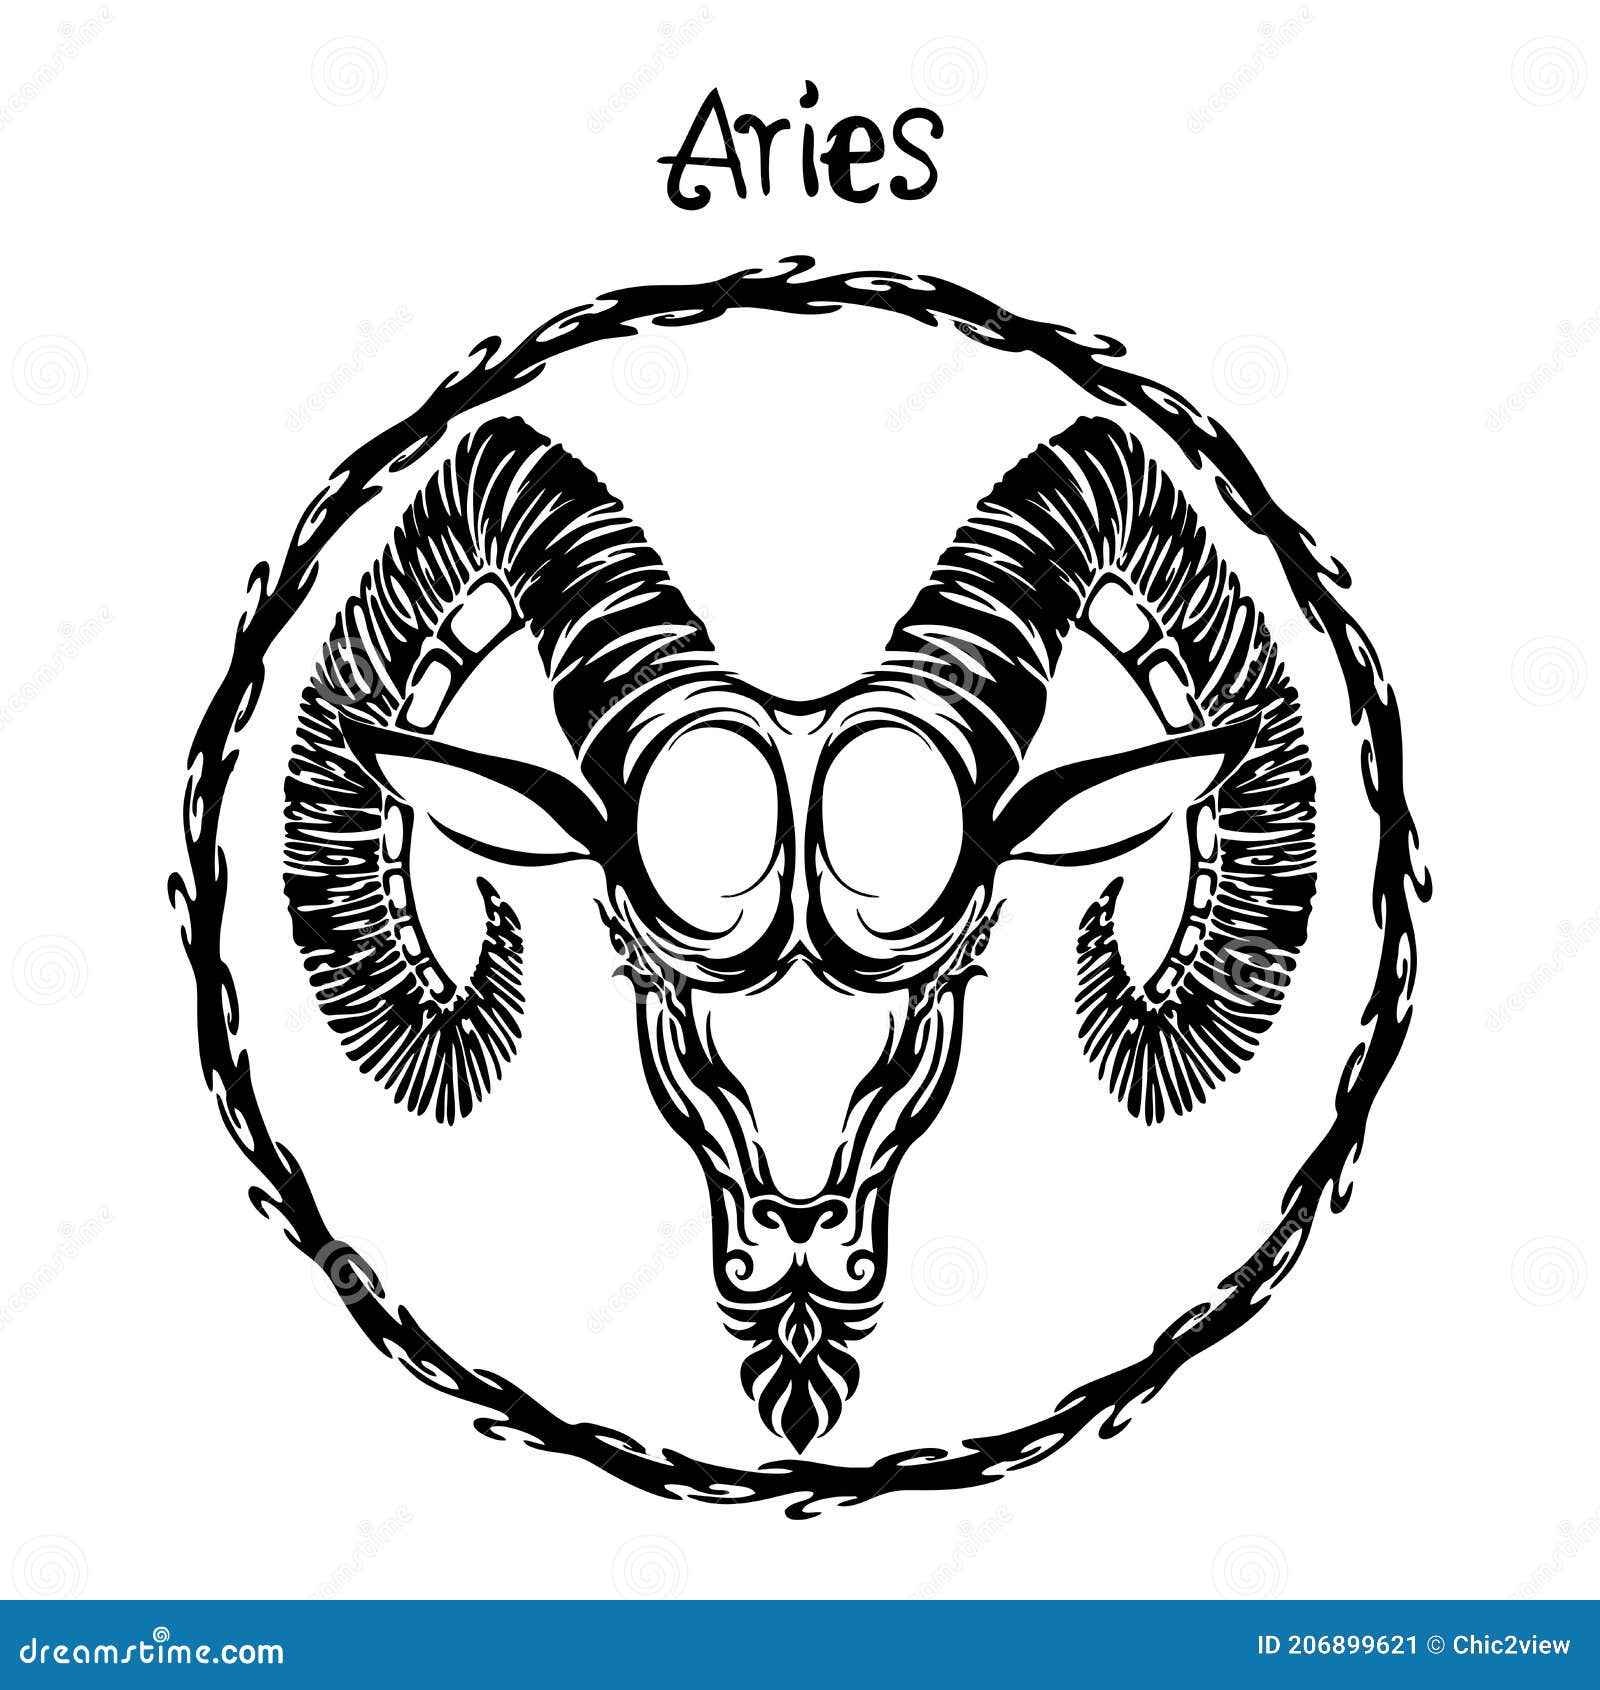 Aries Elements Tattoo Design/ Symbol Tattoo/ Honeysuckle Flower  Constellation Tattoo Design - Etsy Denmark